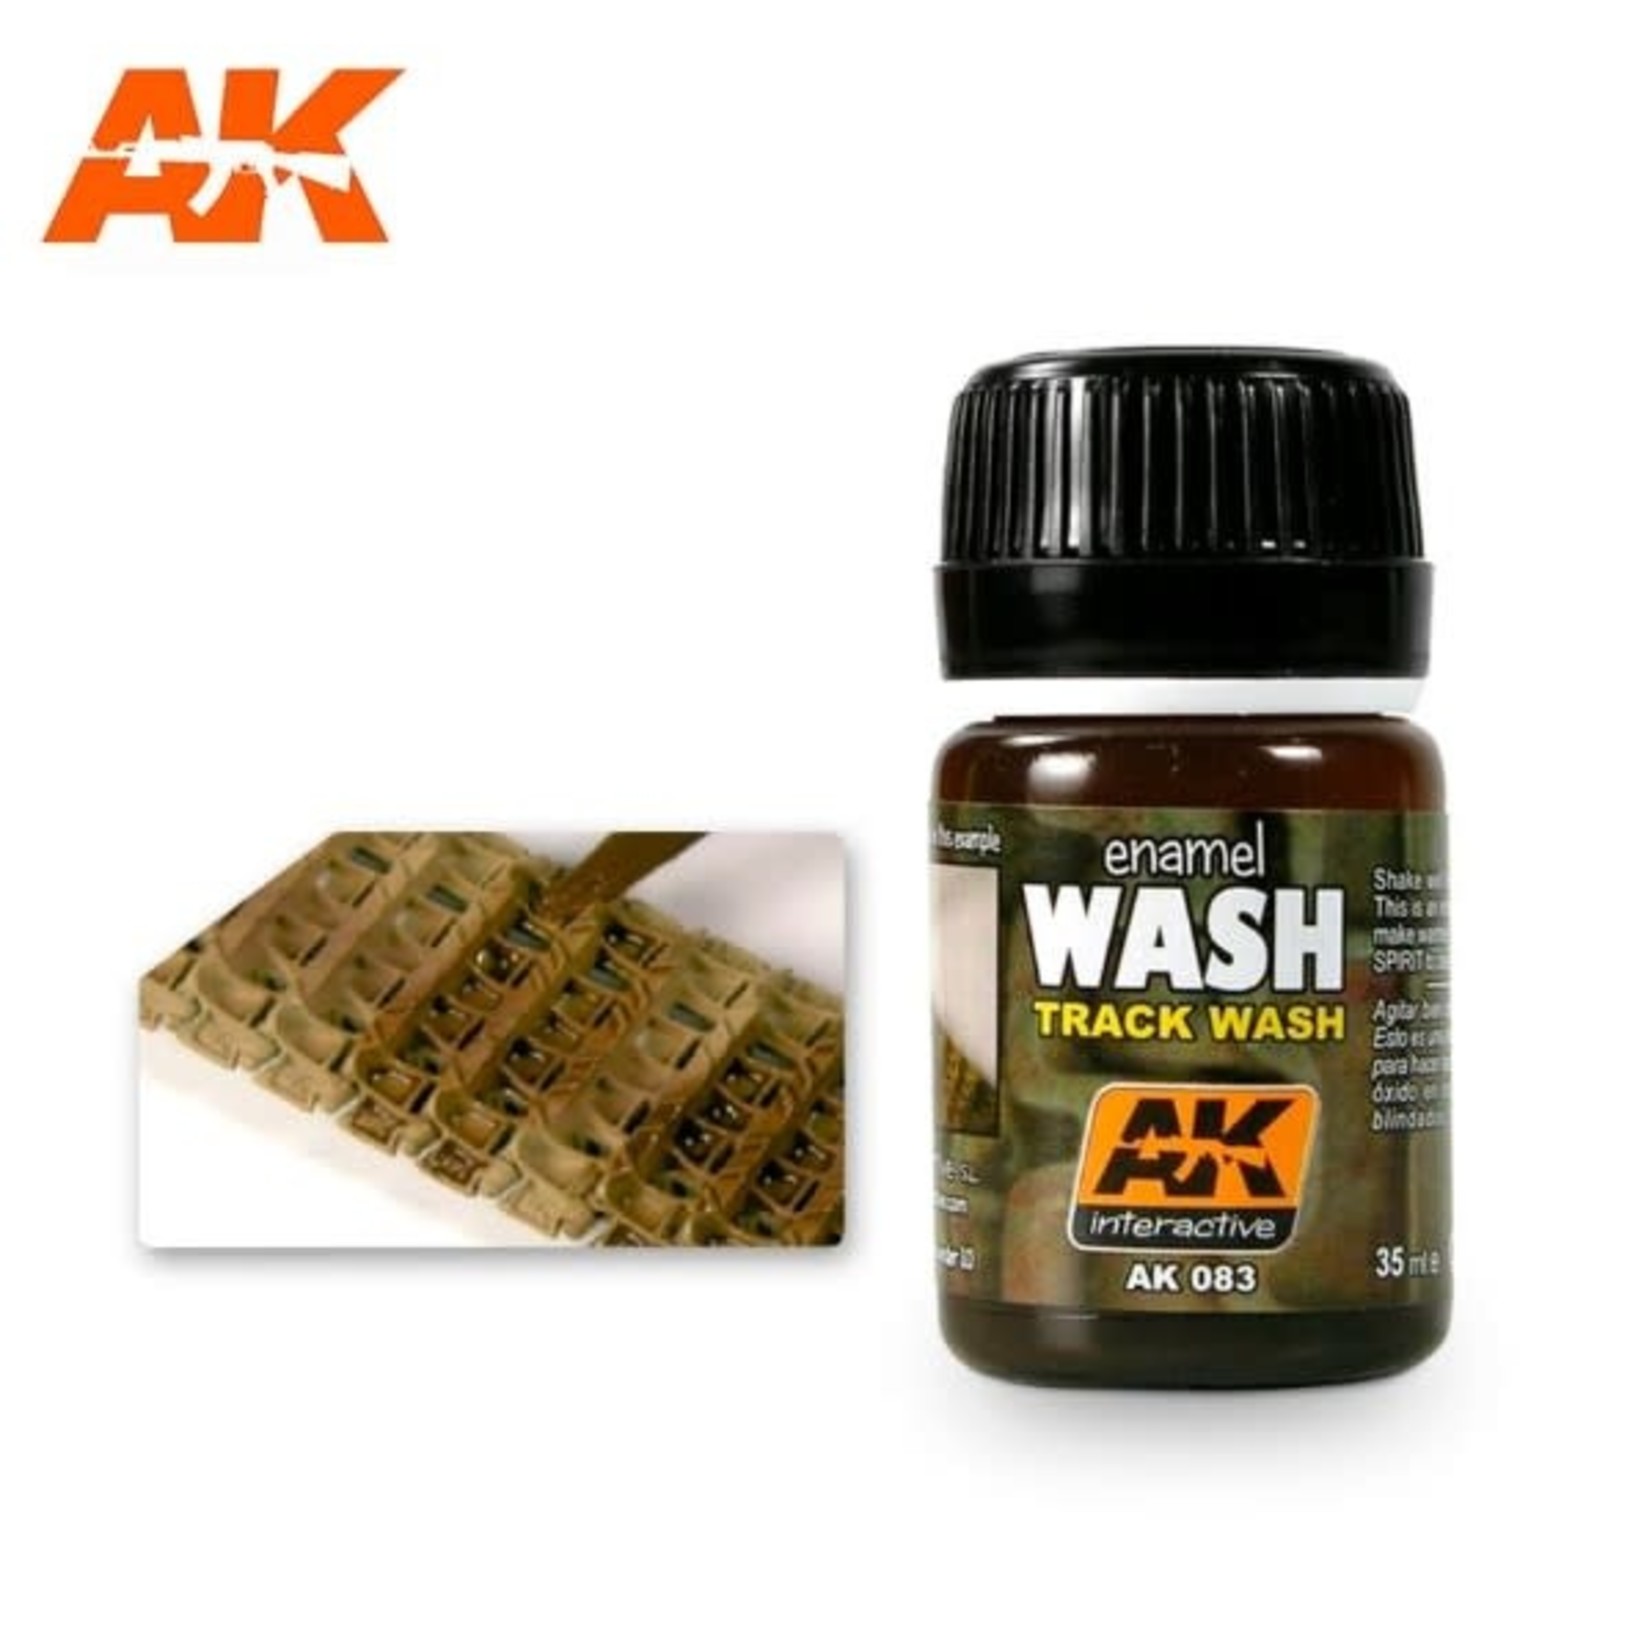 AK Interactive AK-083 Track Wash